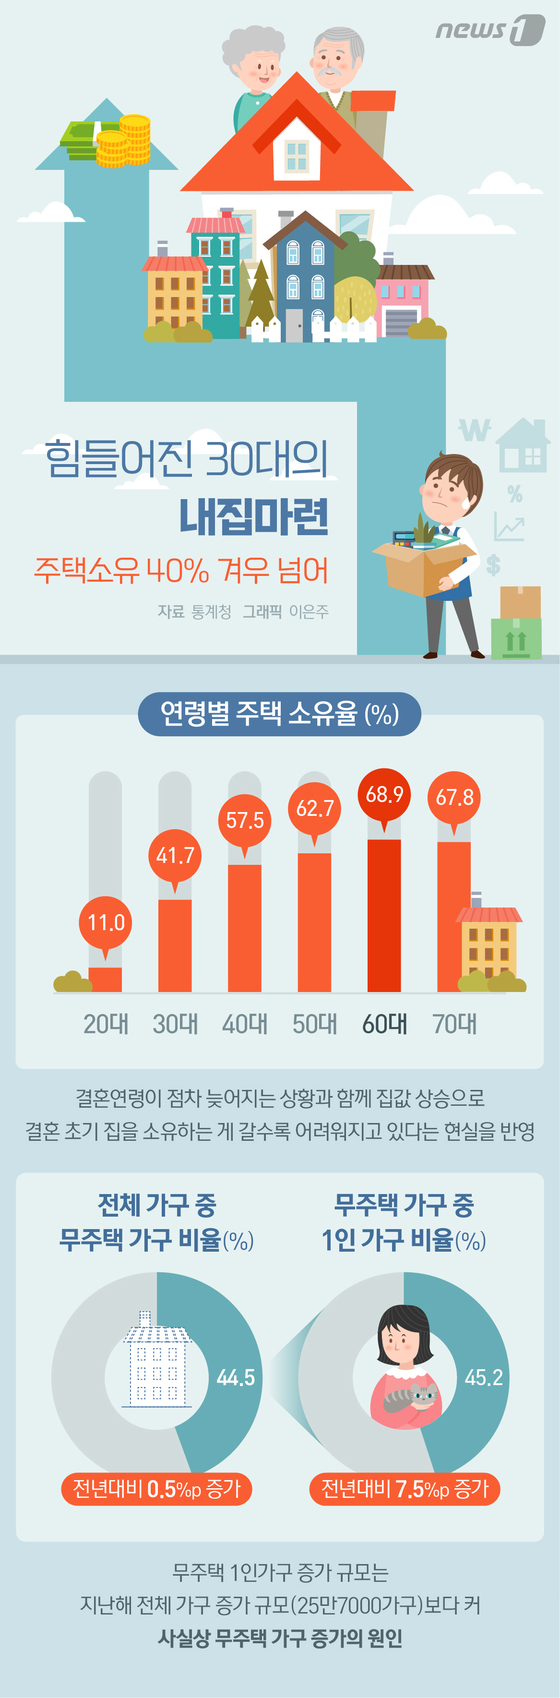 [그래픽뉴스] 힘들어진 30대의 내집마련…주택소유 40% 겨우 넘어